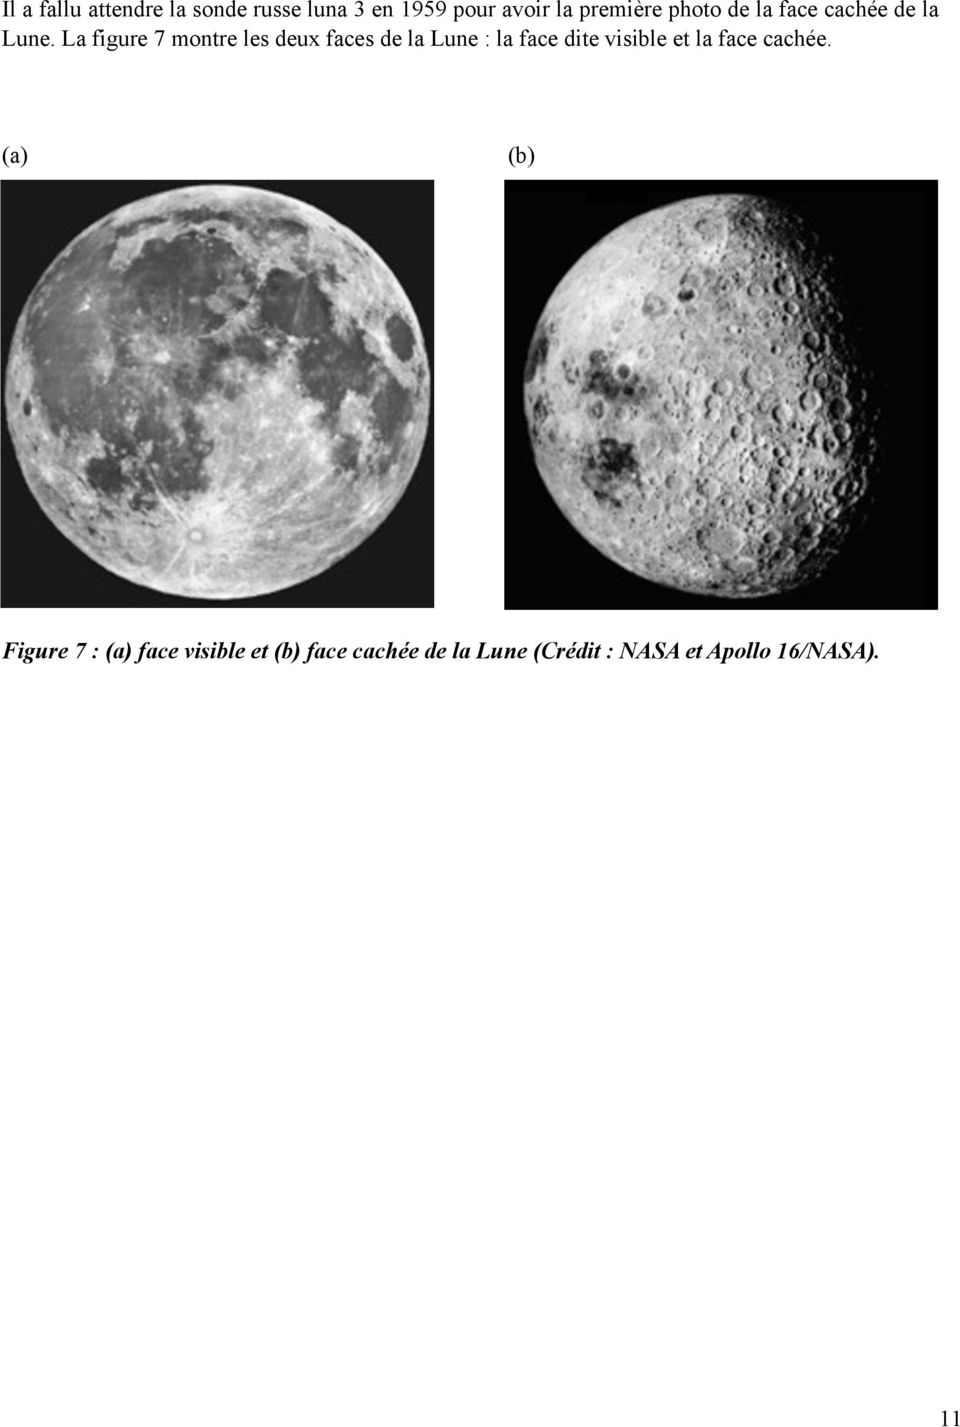 La figure 7 montre les deux faces de la Lune : la face dite visible et la